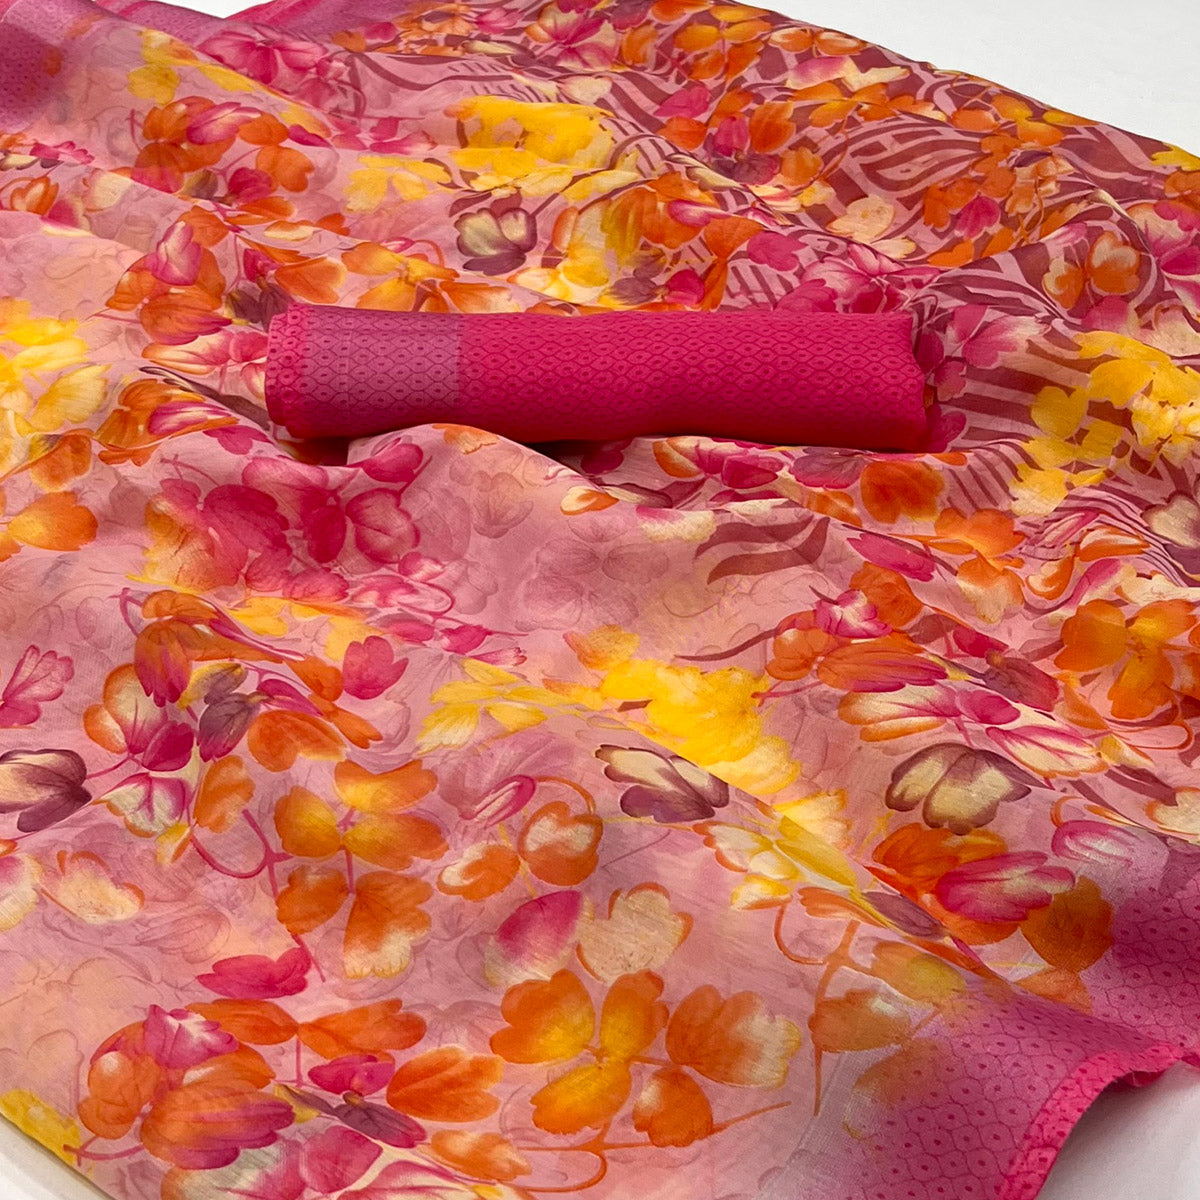 Pink Floral Printed Linen Saree